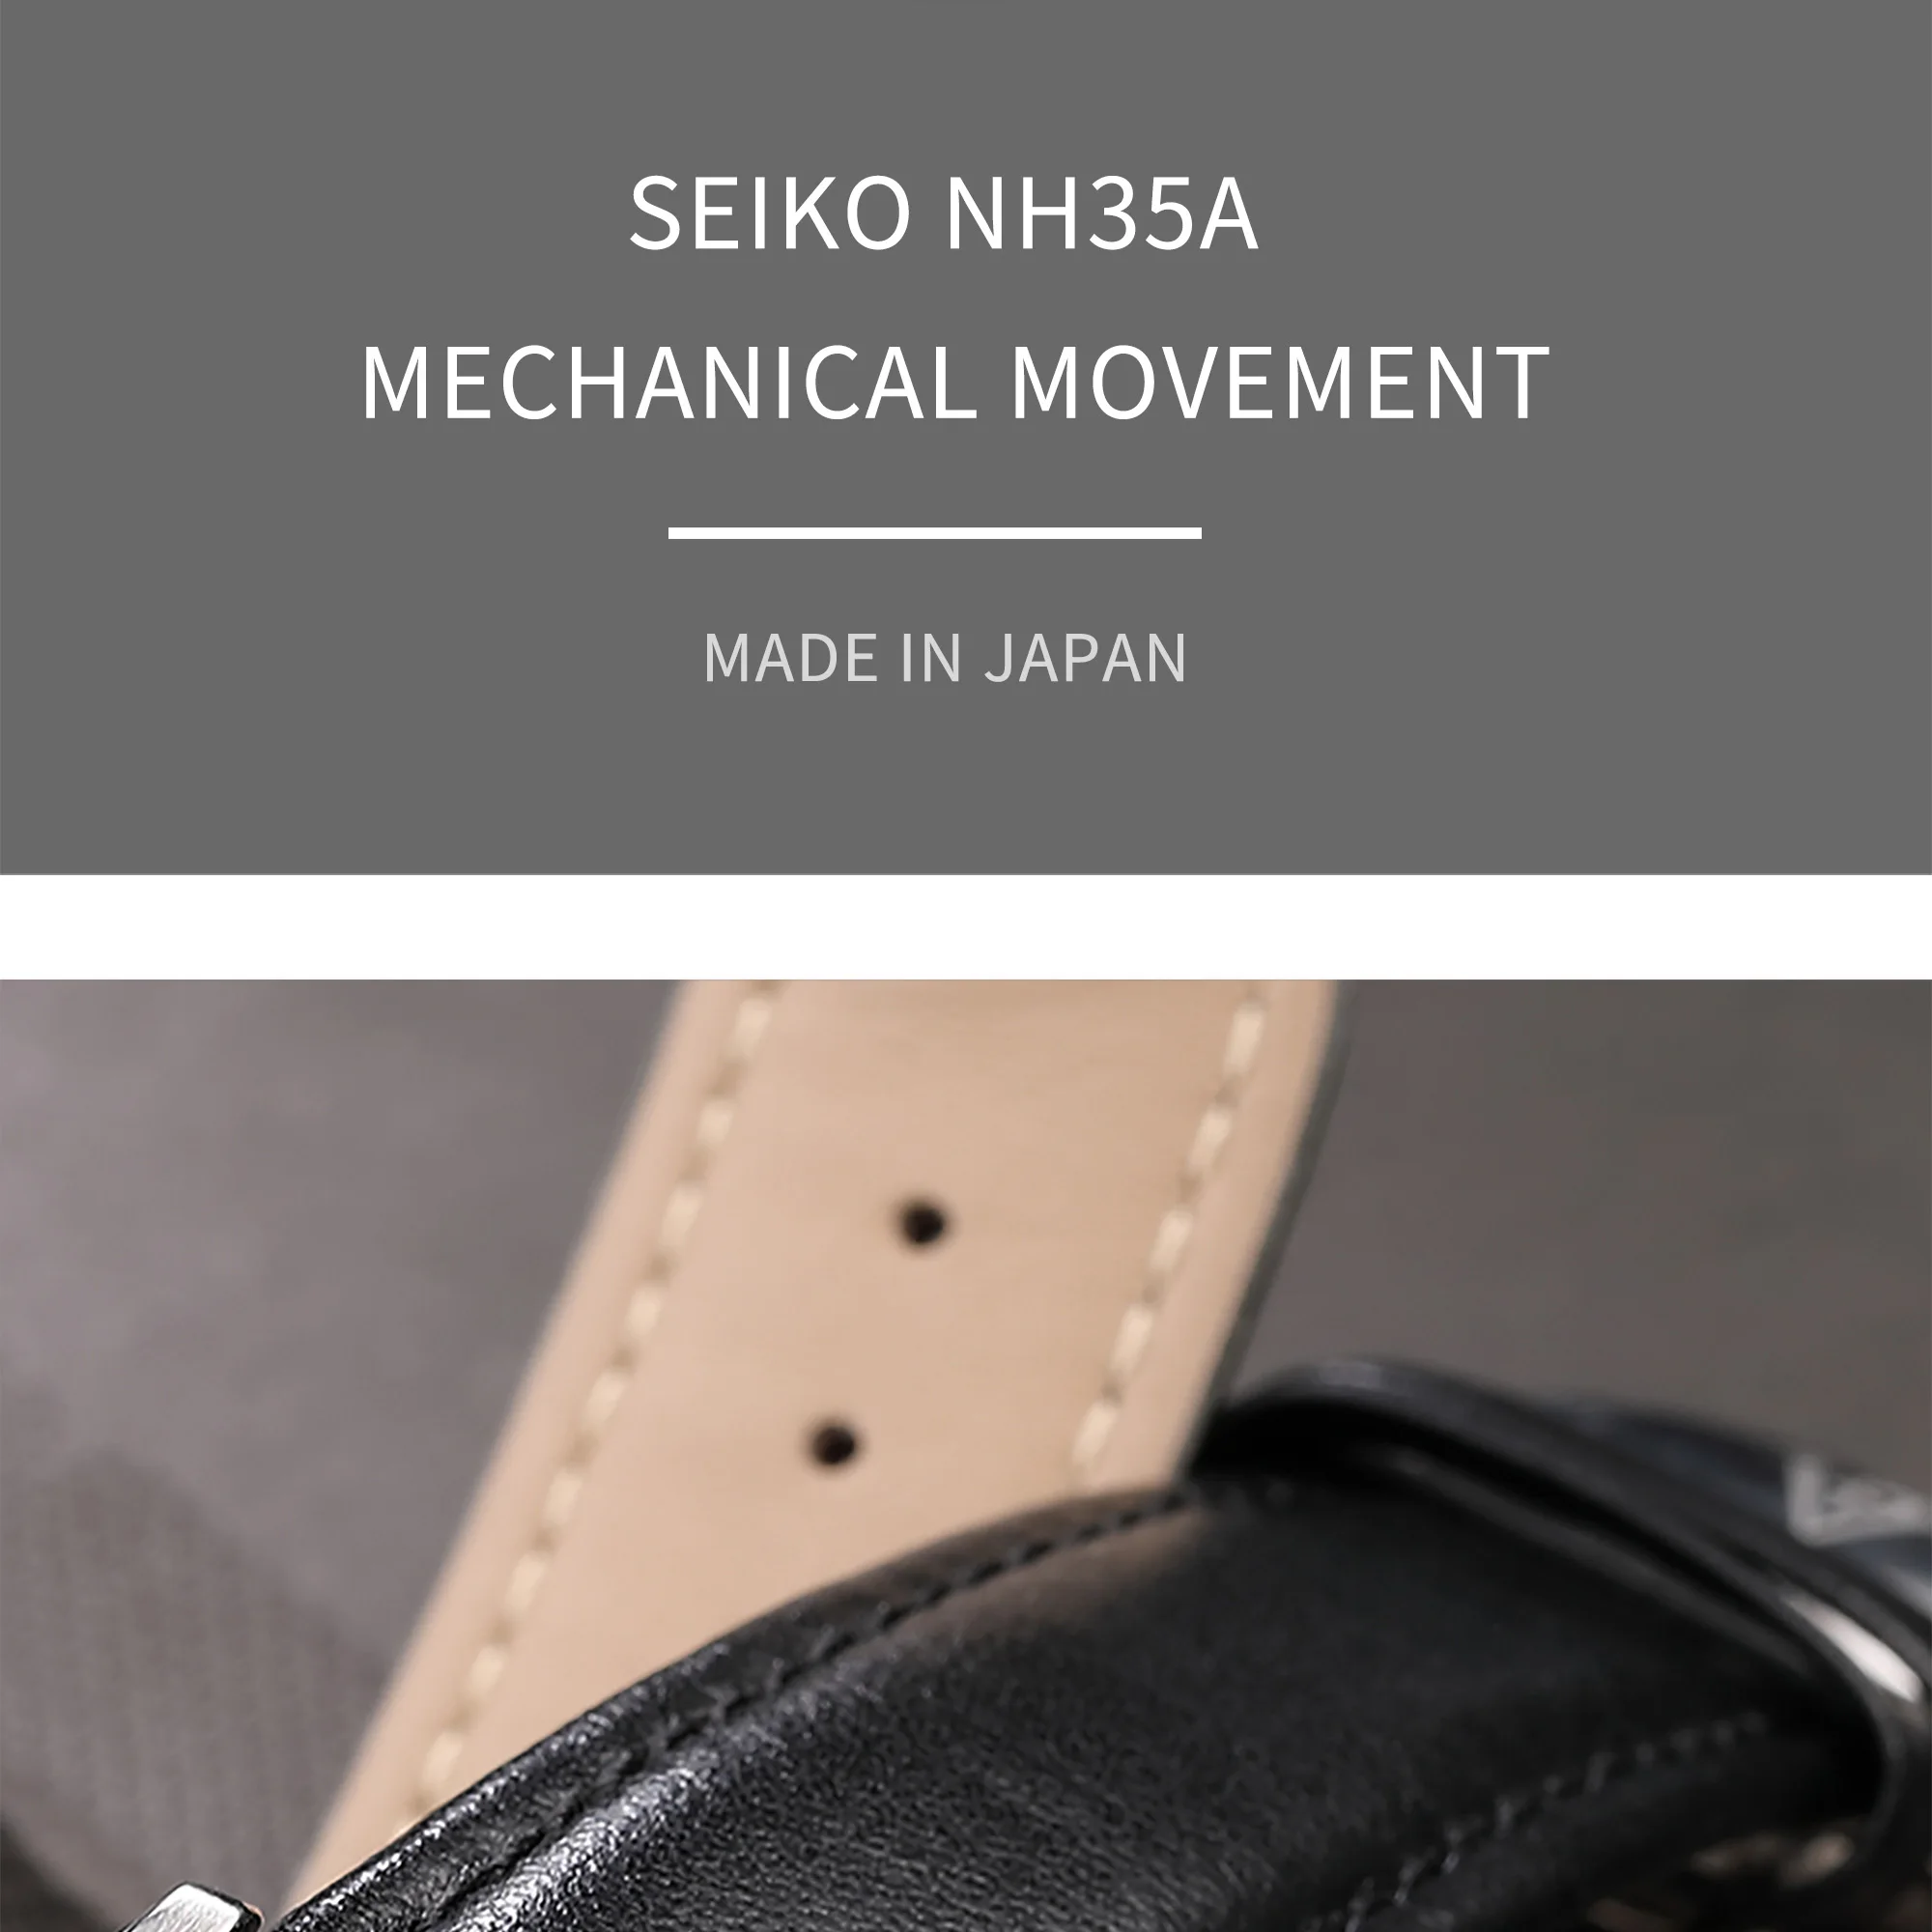 CADISEN автоматические механические часы для мужчин Seiko NH35A Move для мужчин t натуральная кожа Сапфир Водонепроницаемый relogio masculino reloj hombre